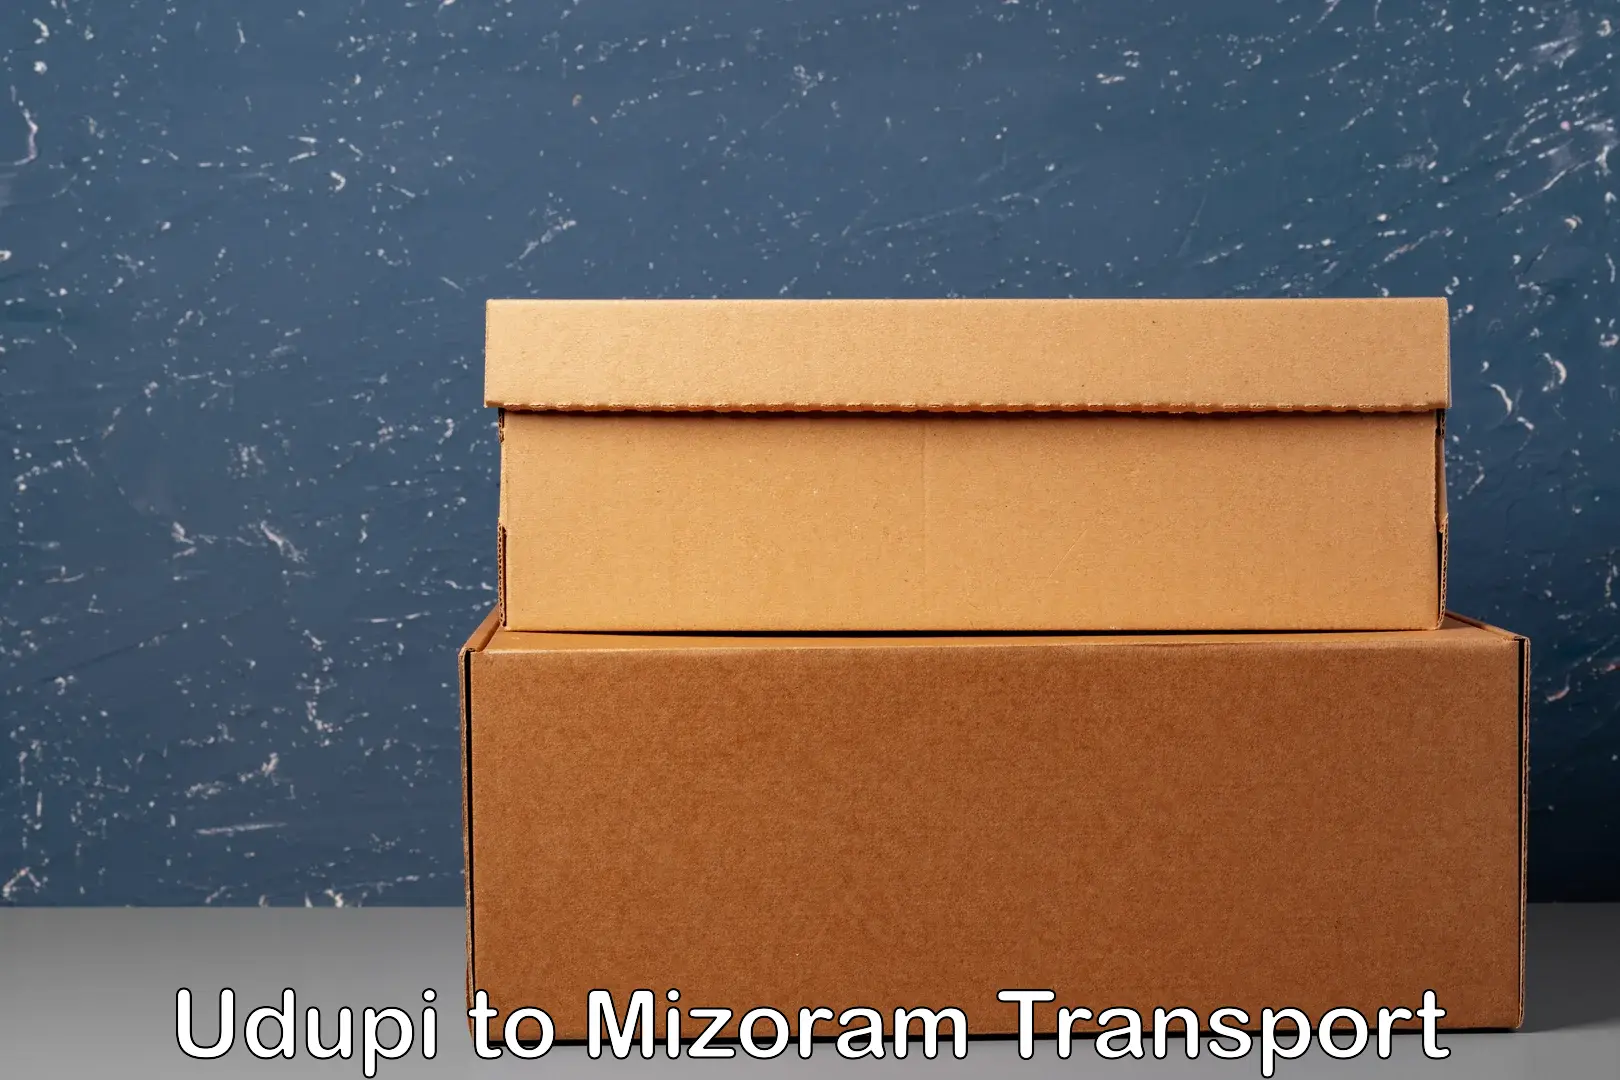 Furniture transport service Udupi to Mizoram